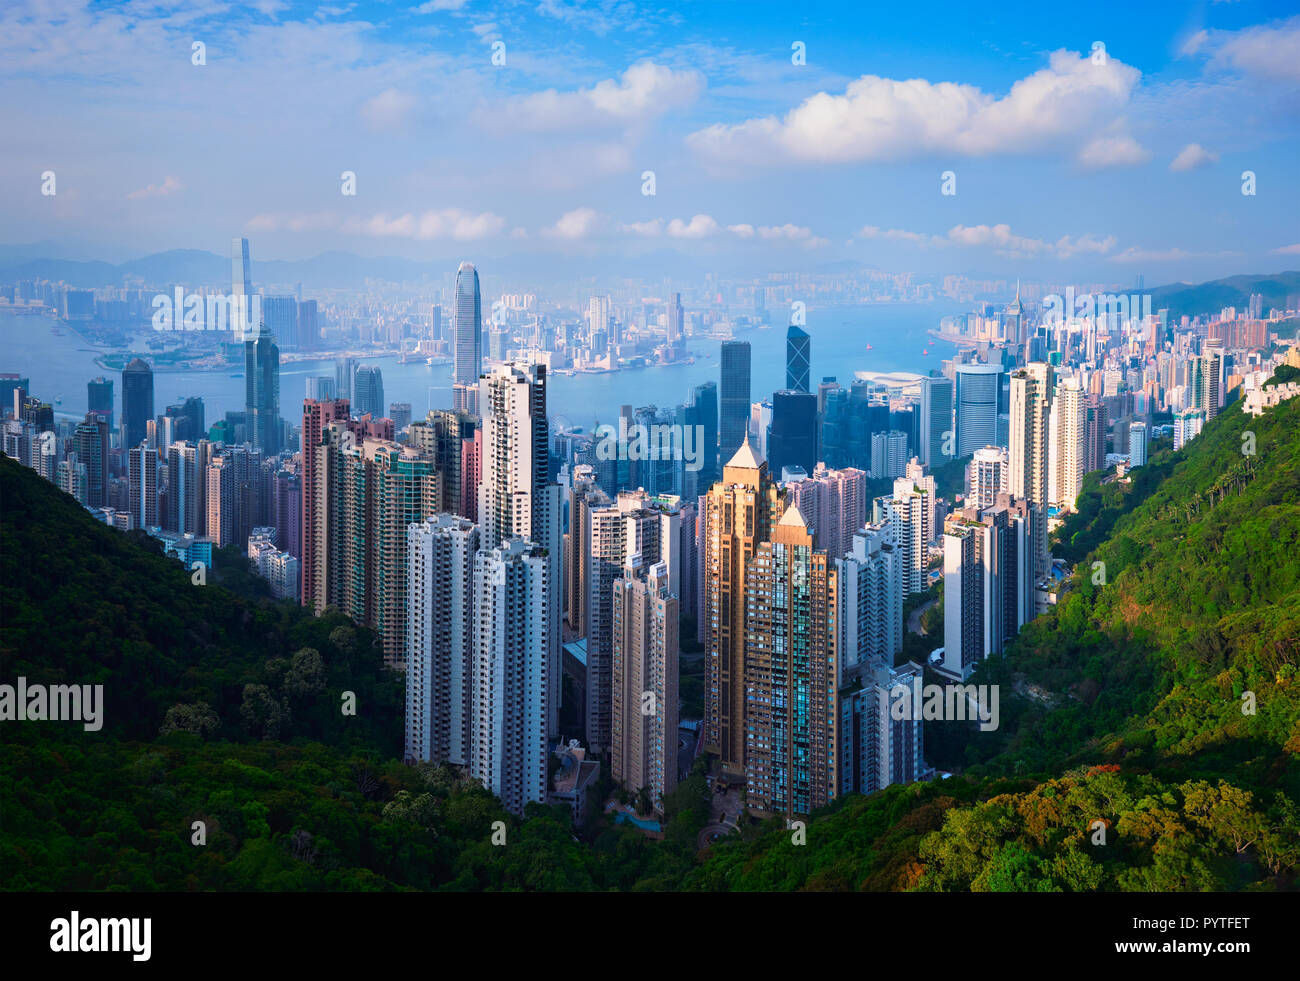 Toits de gratte-ciel de Hong Kong cityscape view Banque D'Images